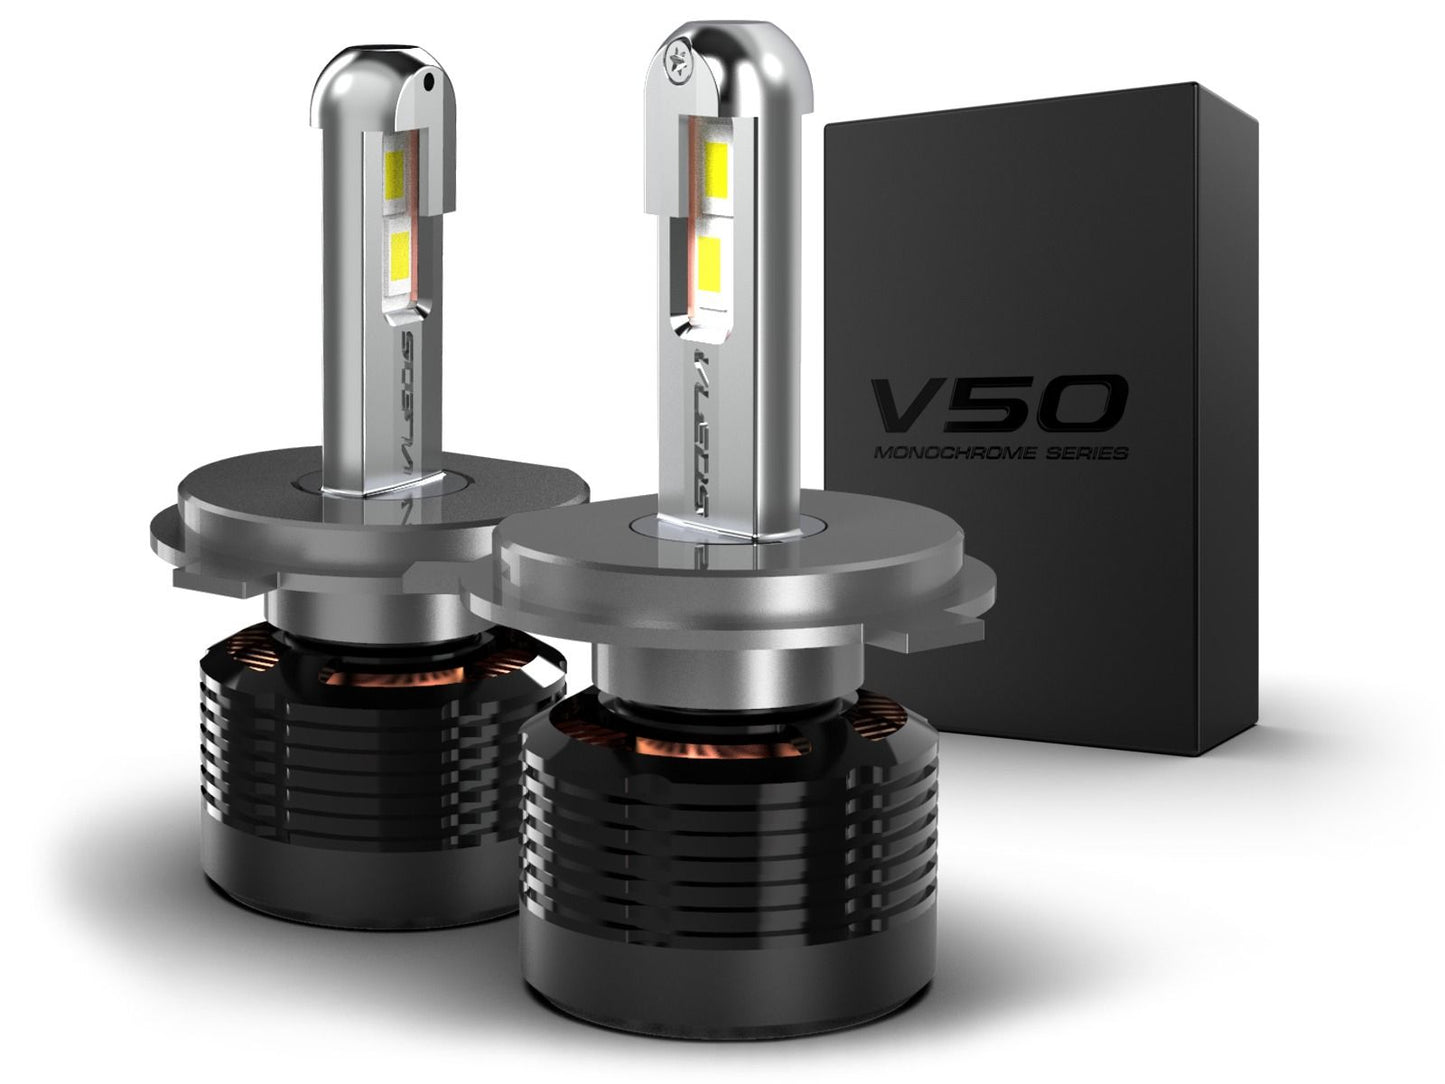 H4: VLEDS V50 Monochrome Series